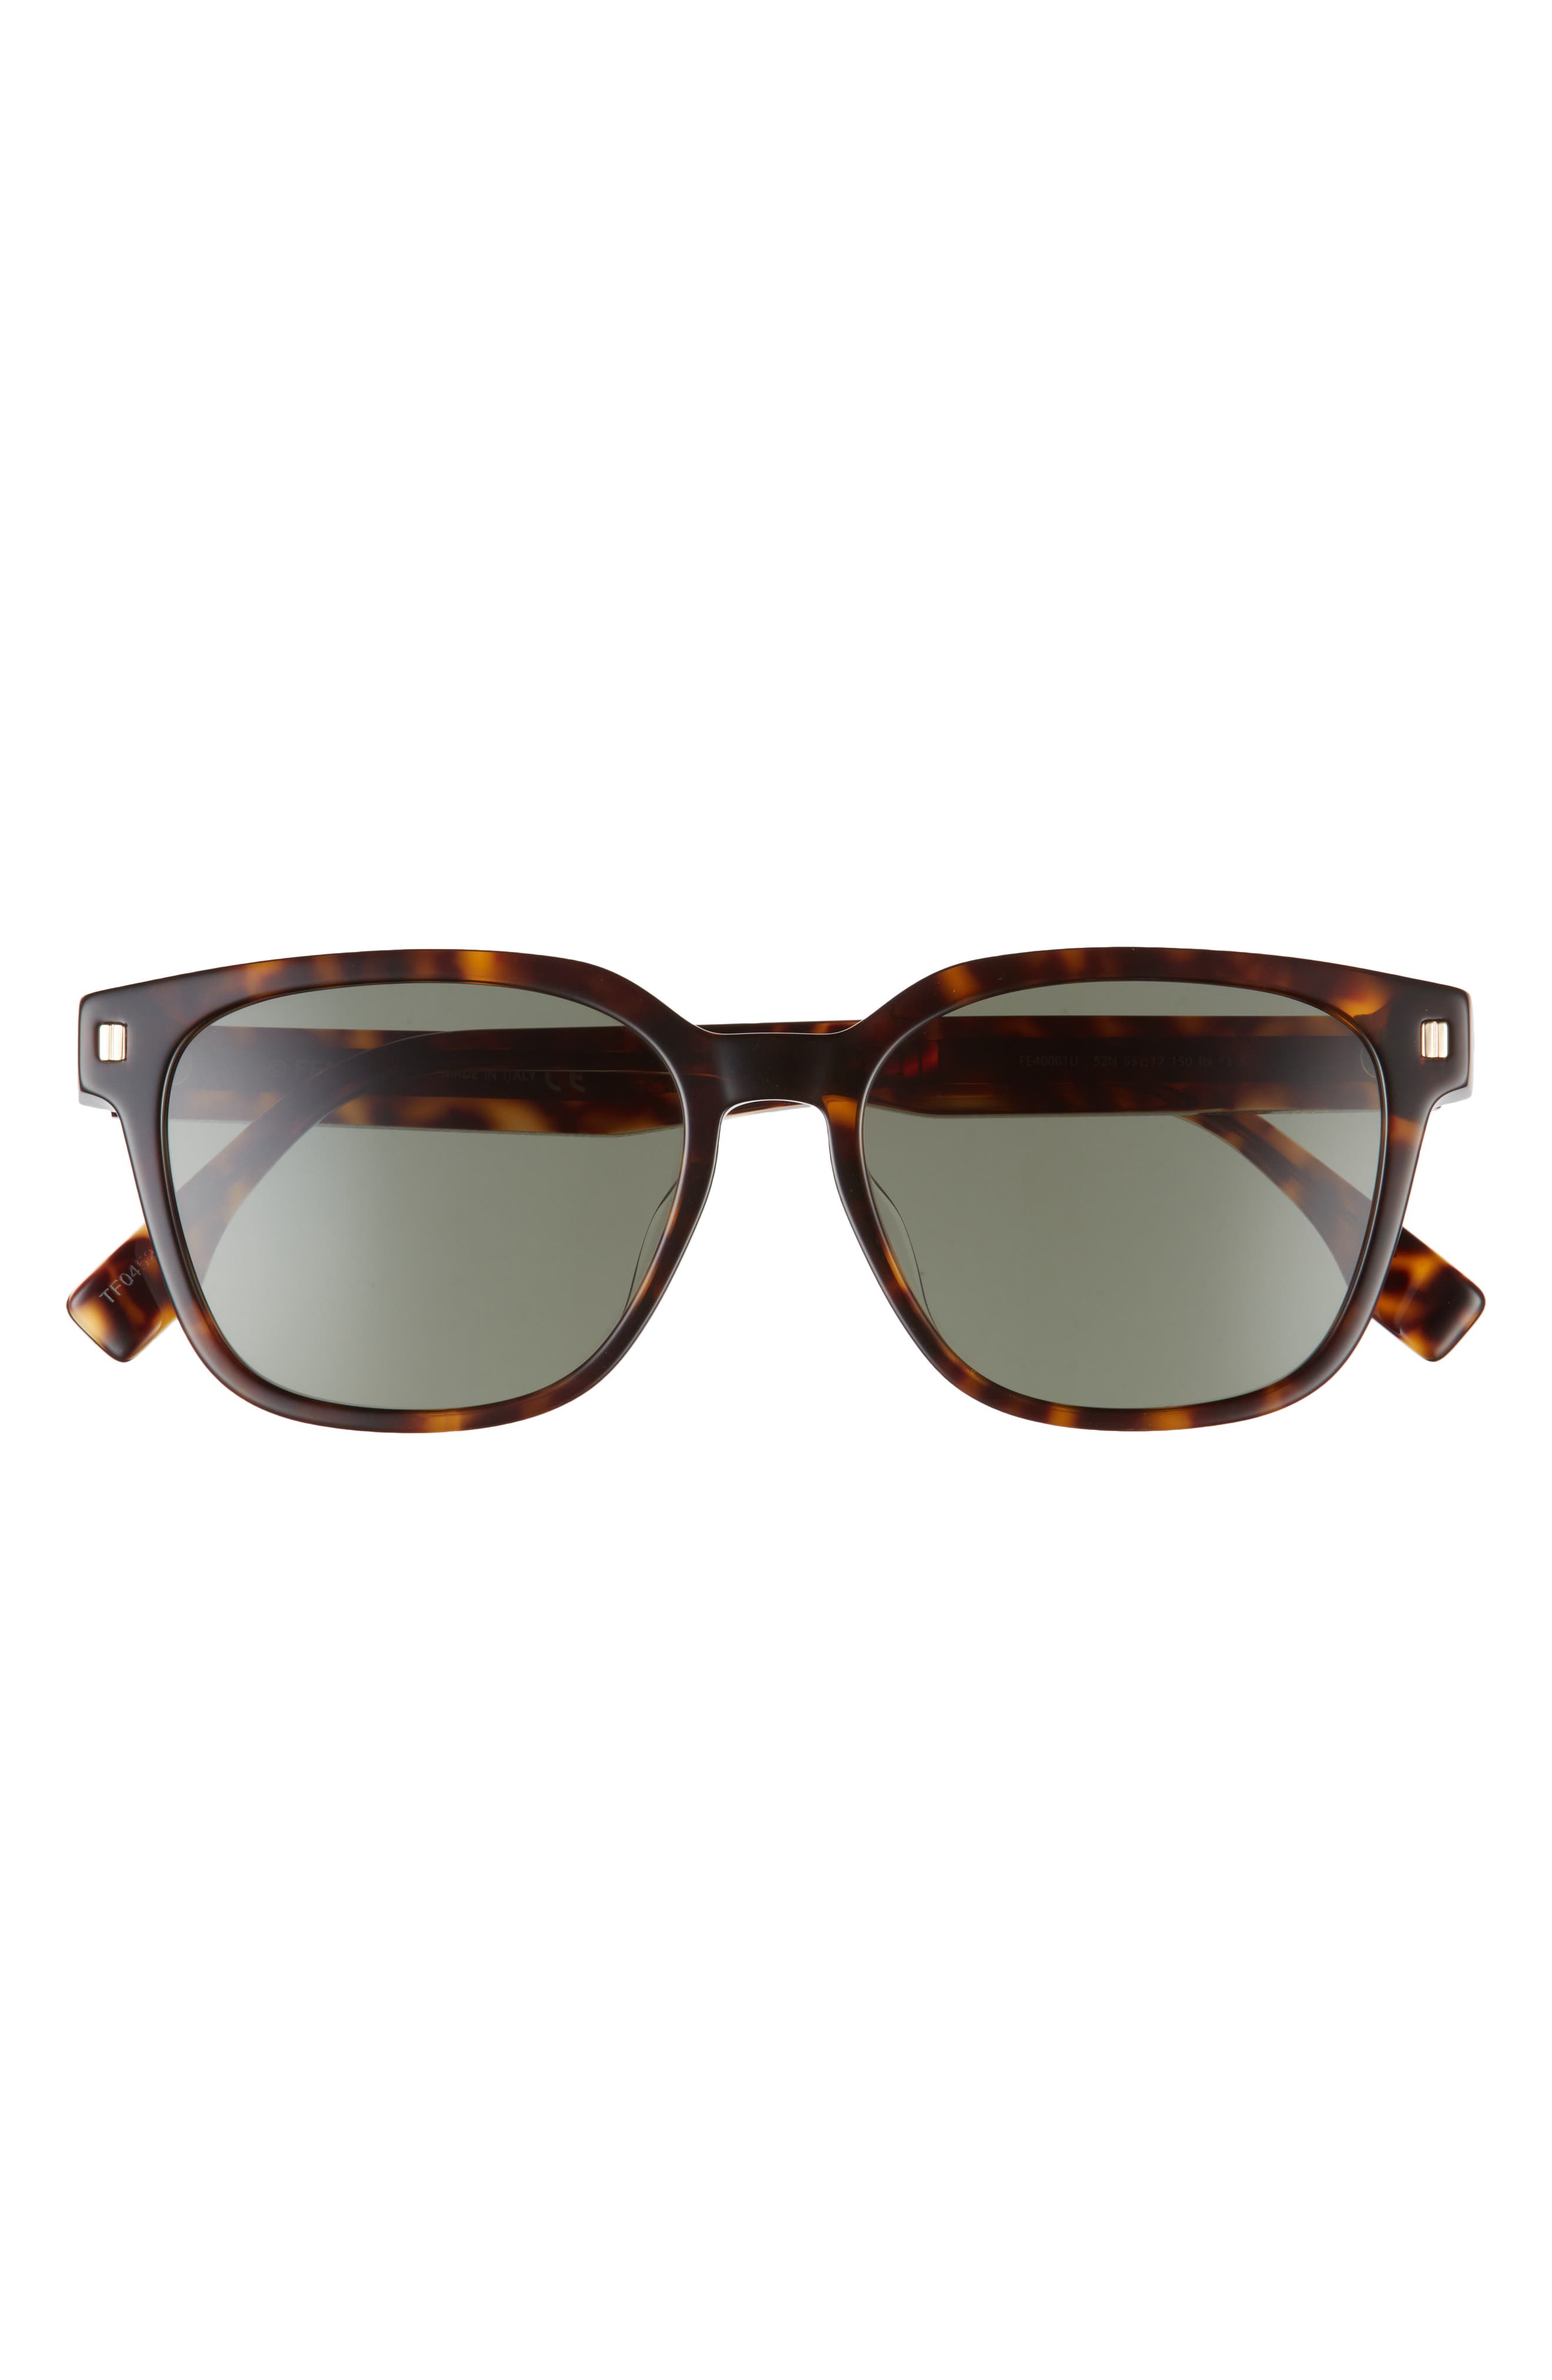 Fendi 55mm Square Sunglasses in Dark Havana /Green at Nordstrom